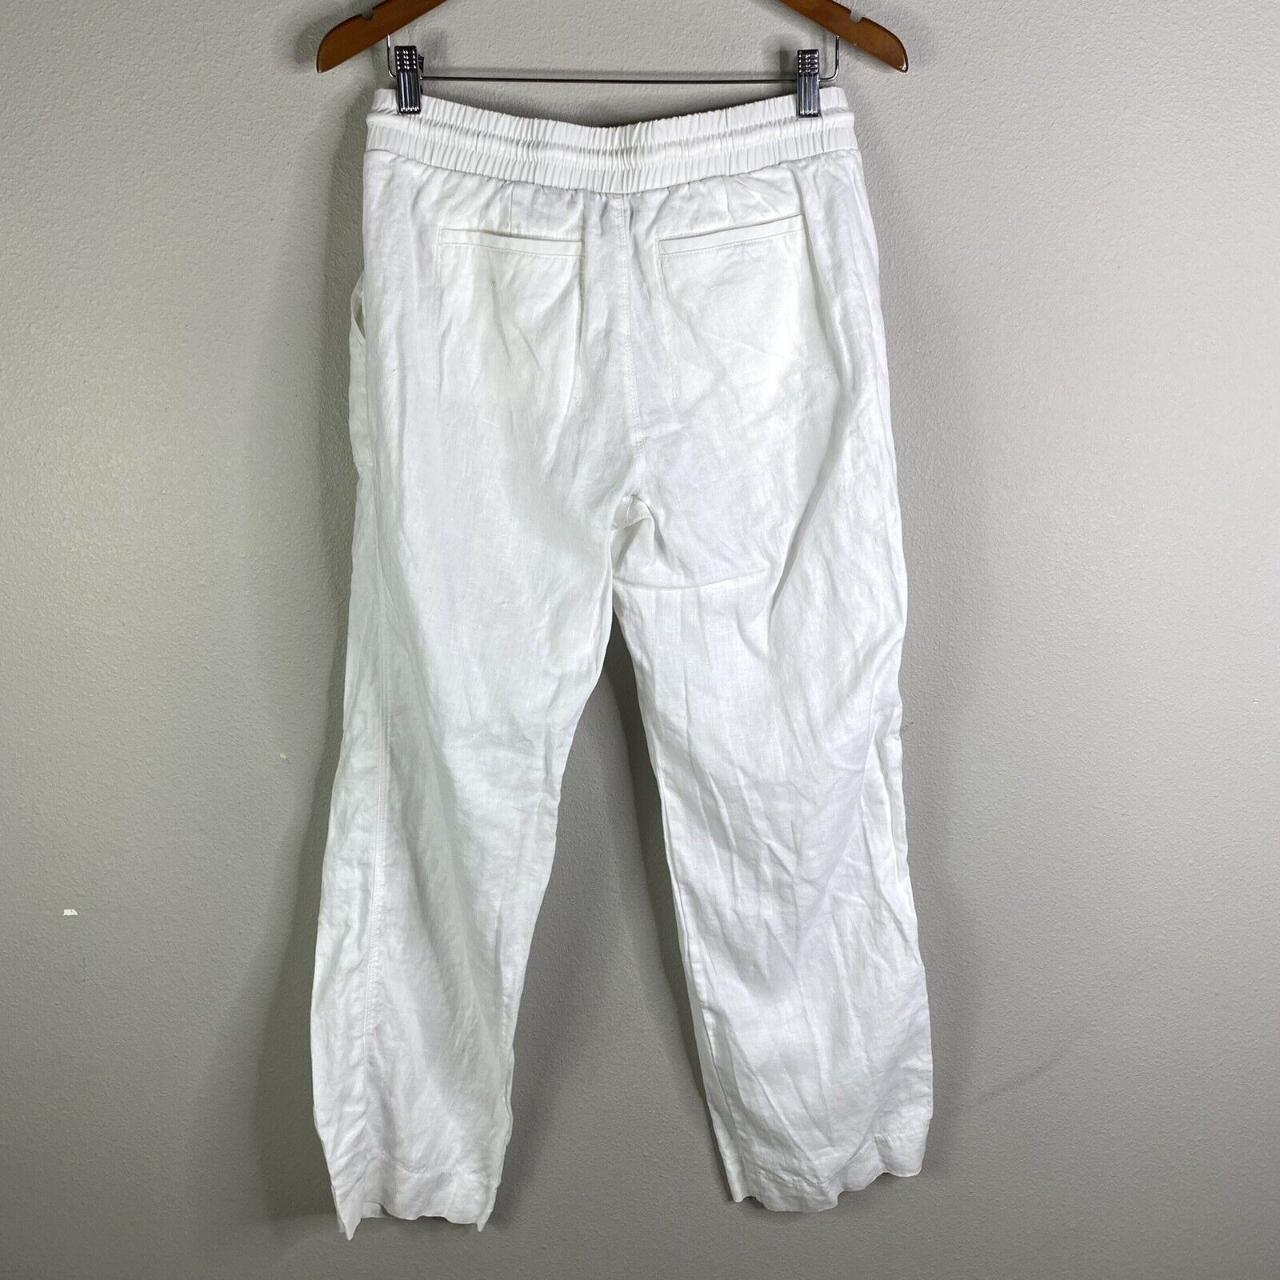 Women's Athleta Bali Linen Pants, White, Size 8.... - Depop